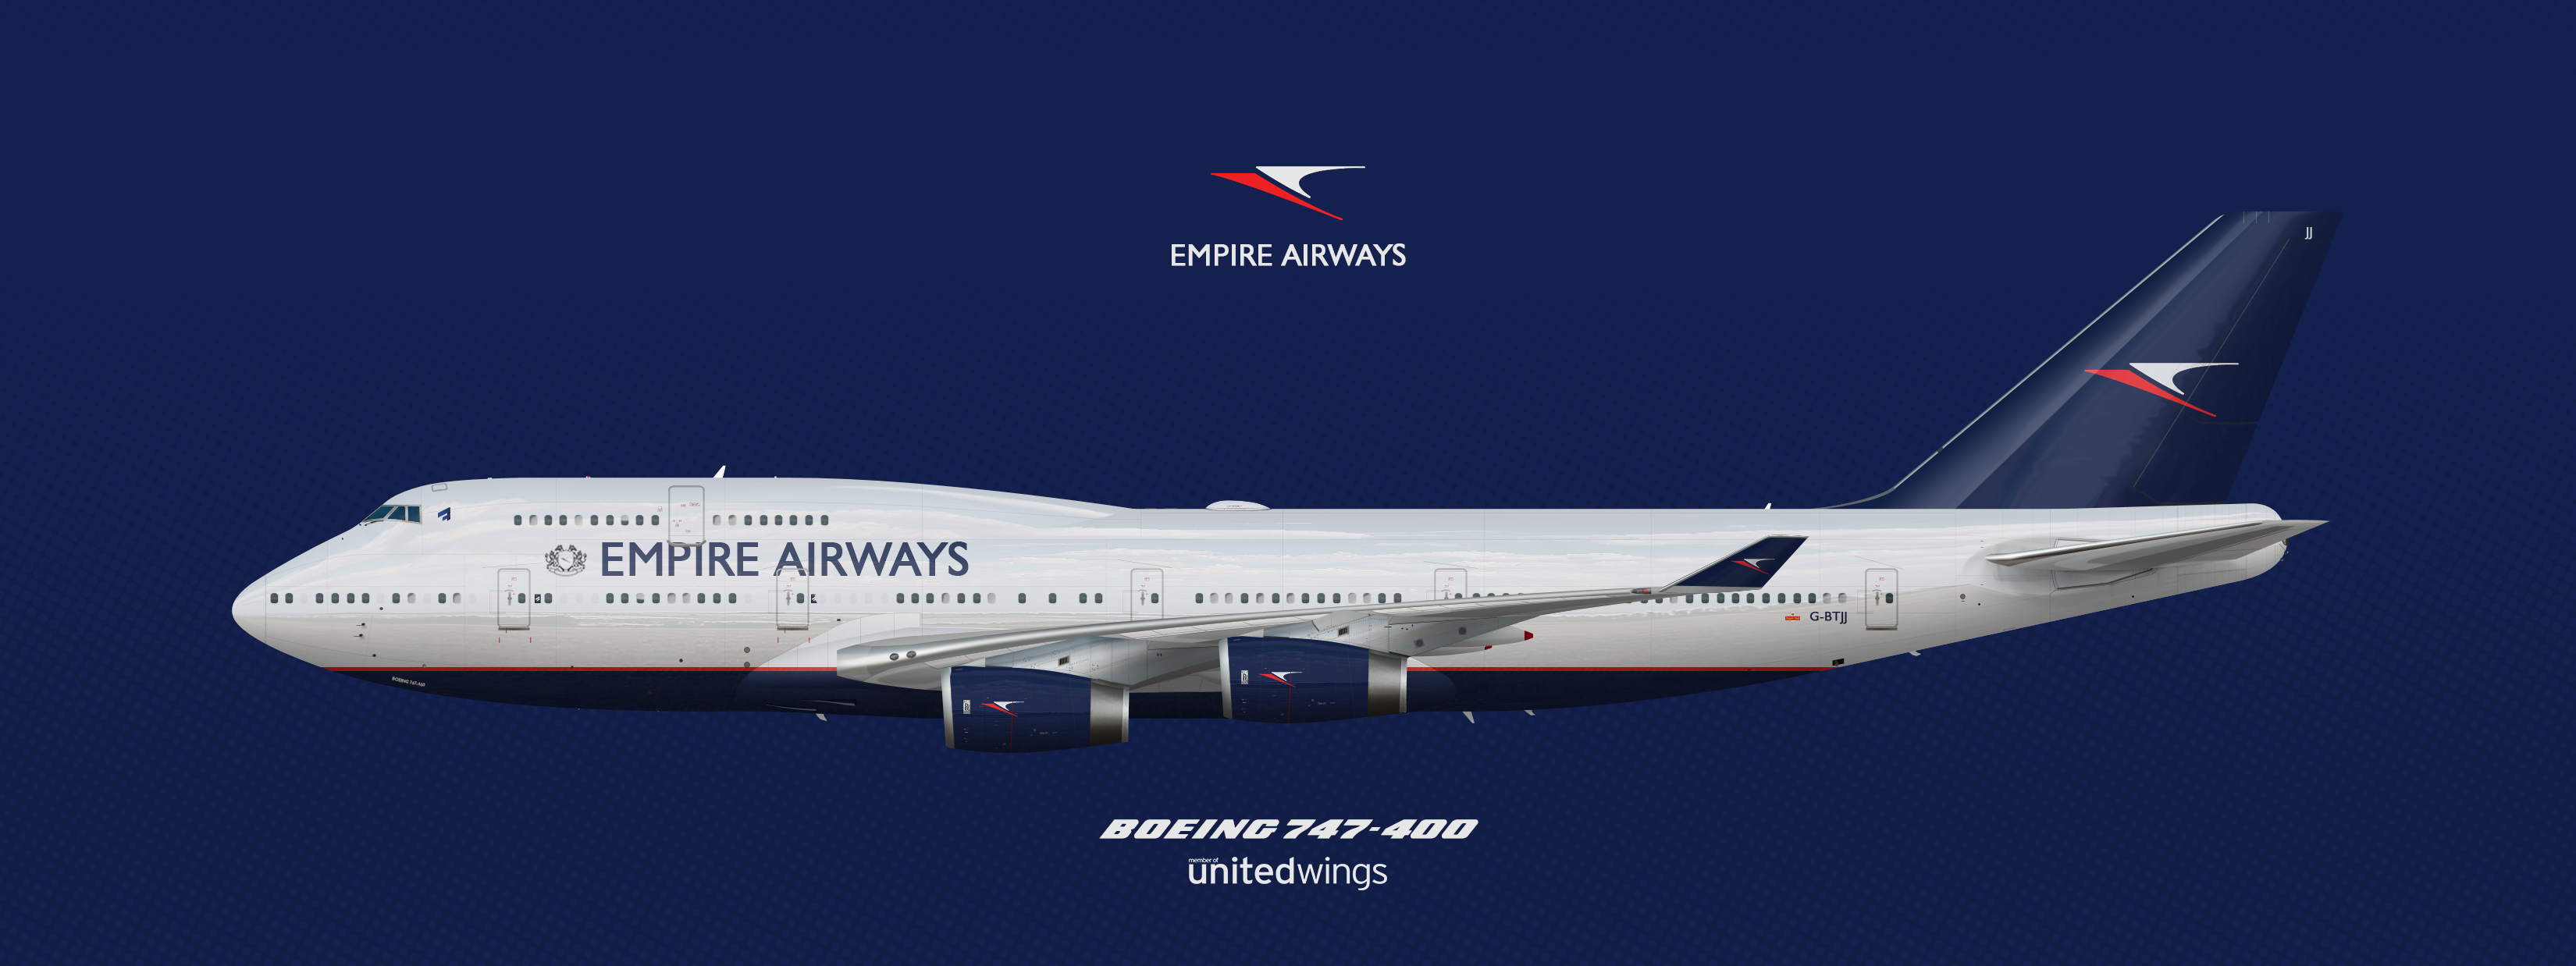 Boeing 747 400 Empire Airways Gallery Airline Empires